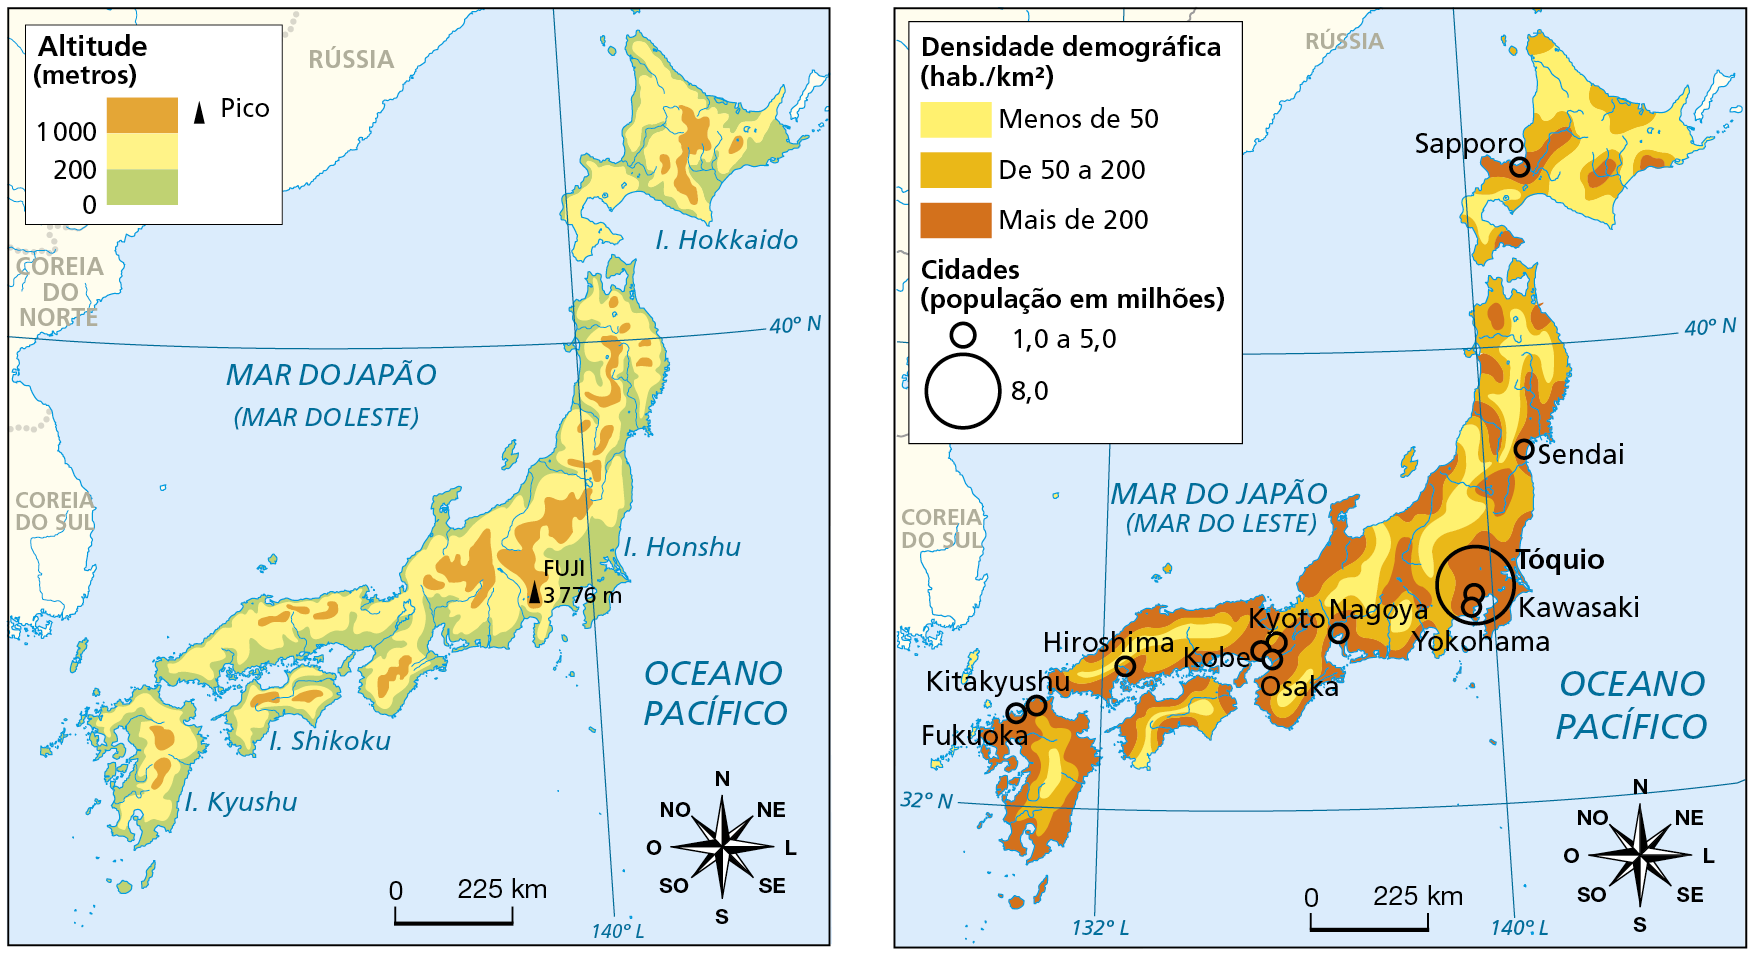 Mapa. Mapa físico do Japão, mostrando a distribuição das altitudes do país. Altitudes (metros) Acima de 1.000 metros: pequenas porções localizadas no interior das principais ilhas do país. Entre 200 e 1.000 metros: predominante em todas as principais ilhas do país. Entre 0 e 200 metros: predominante em toda a porção litorânea do país. Pico: Monte Fuji, 3.776 metros, localizado no centro do país. Na parte inferior direita, a rosa dos ventos e a escala de 0 a 225 quilômetros. Mapa. Mapa mostrando as áreas com diferentes níveis de densidade demográfica, em habitantes por quilômetro quadrado, no território japonês. Essas áreas estão destacadas em tonalidades de cor que variam do mais claro, em amarelo (áreas de densidade mais baixa), para o mais escuro, em vermelho (áreas de densidade elevada). Densidade demográfica (habitantes por quilômetros quadrados) Menos de 50 habitantes por quilômetros quadrados, em amarelo: predominante na porção Norte do país. De 50 a 200 habitantes por quilômetros quadrados, em laranja: predominante no centro-sul do país. Mais de 200 habitantes por quilômetros quadrados, em vermelho: predominante no entorno das principais cidades do país, localizadas ao longo do litoral. Cidades (população em milhões). Entre 1,0 e 5,0 milhões: Sapporo, Sendai, Kawasaki, Yokohama, Nagoya, Kyoto, Osaka, Kobe, Hiroshima, Kitakyushu e Fukuoka. 8,0 milhões: população em milhões: Tóquio. Na parte inferior direita, a rosa dos ventos e a escala de 0 a 225 quilômetros.